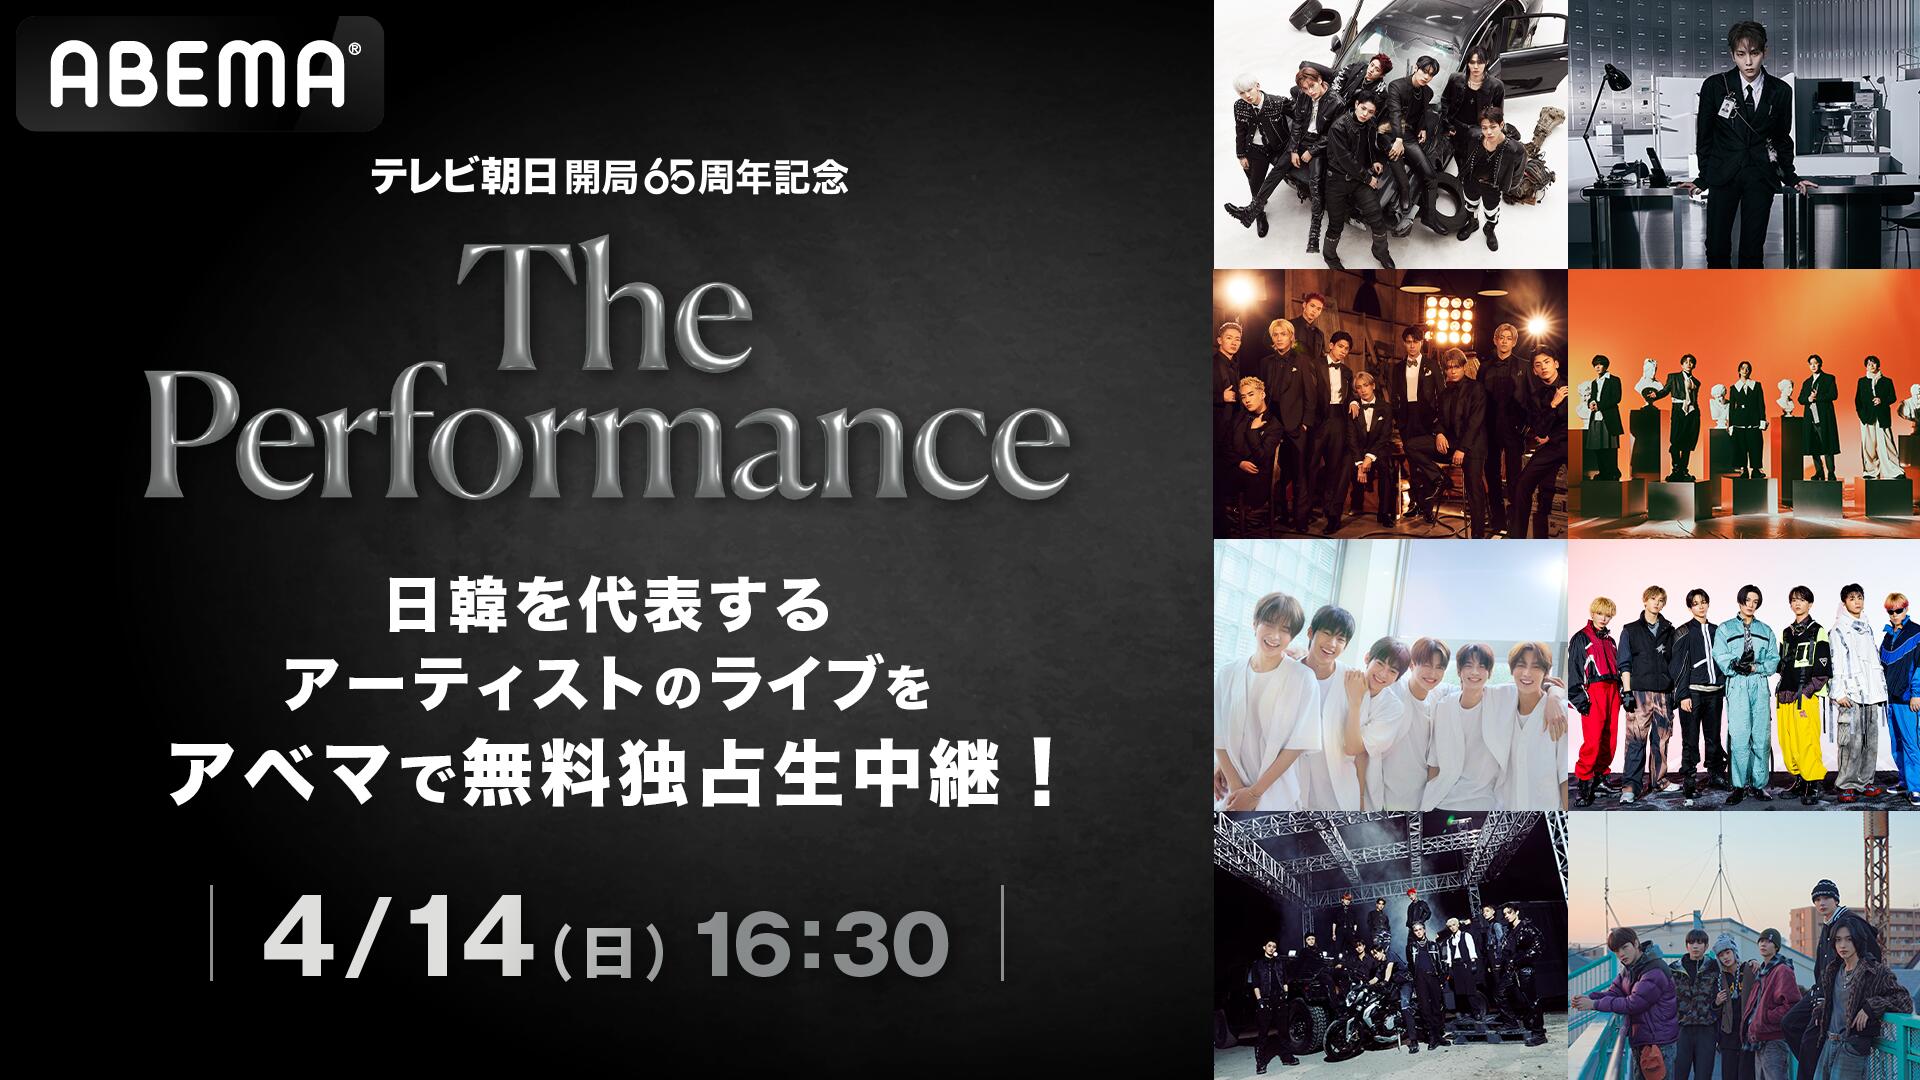 日韓アーティスト8組集結の豪華ライブ「The Performance」をABEMAが14日午後4時半から無料独占生中継!